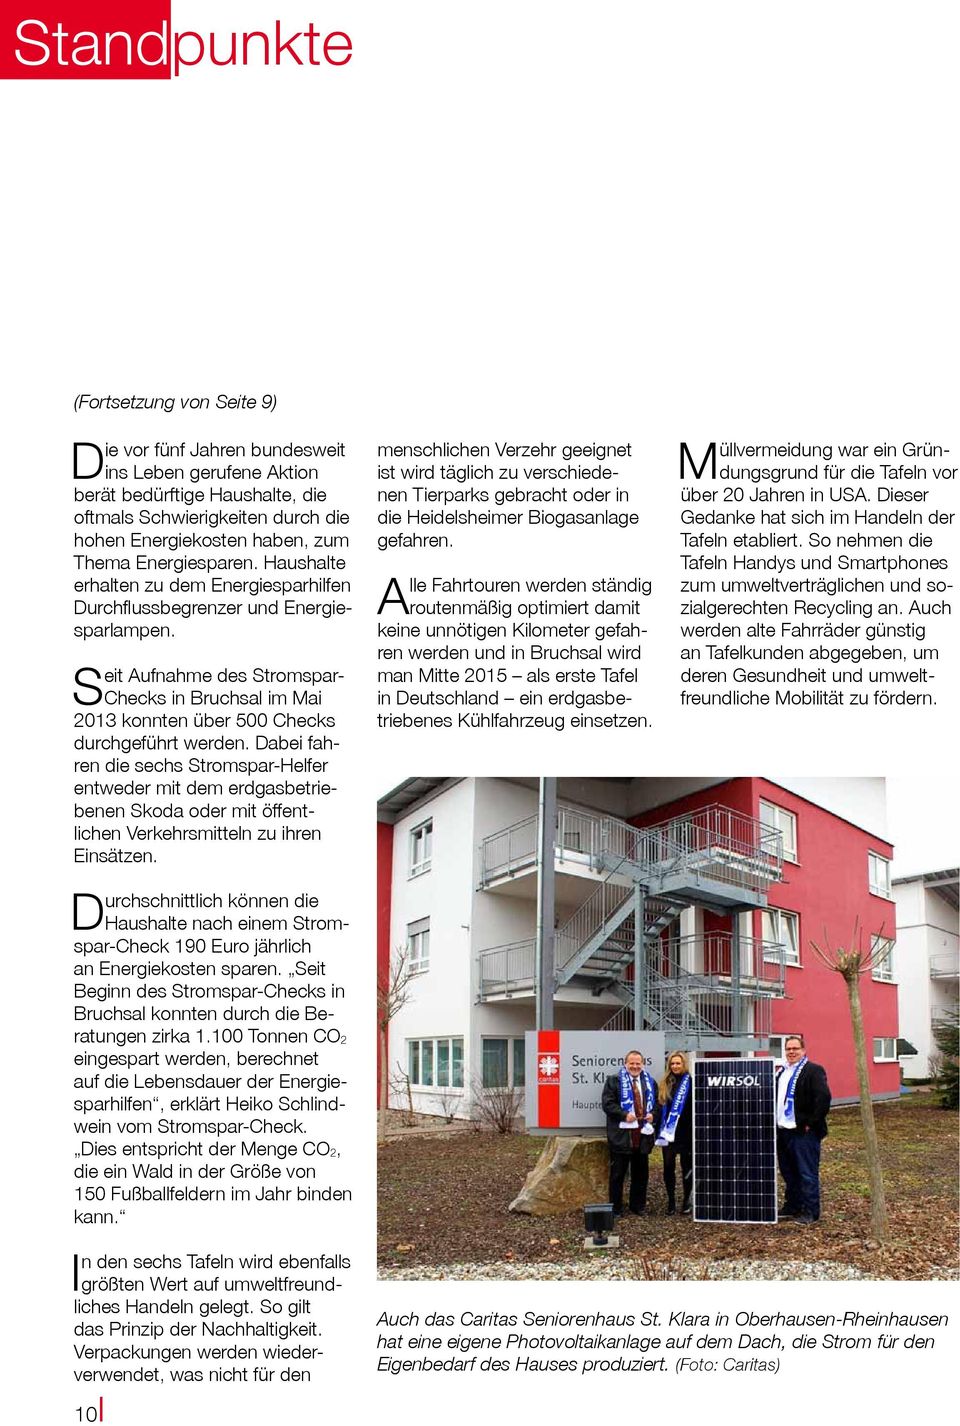 Seit Aufnahme des Stromspar- Checks in Bruchsal im Mai 2013 konnten über 500 Checks durchgeführt werden.